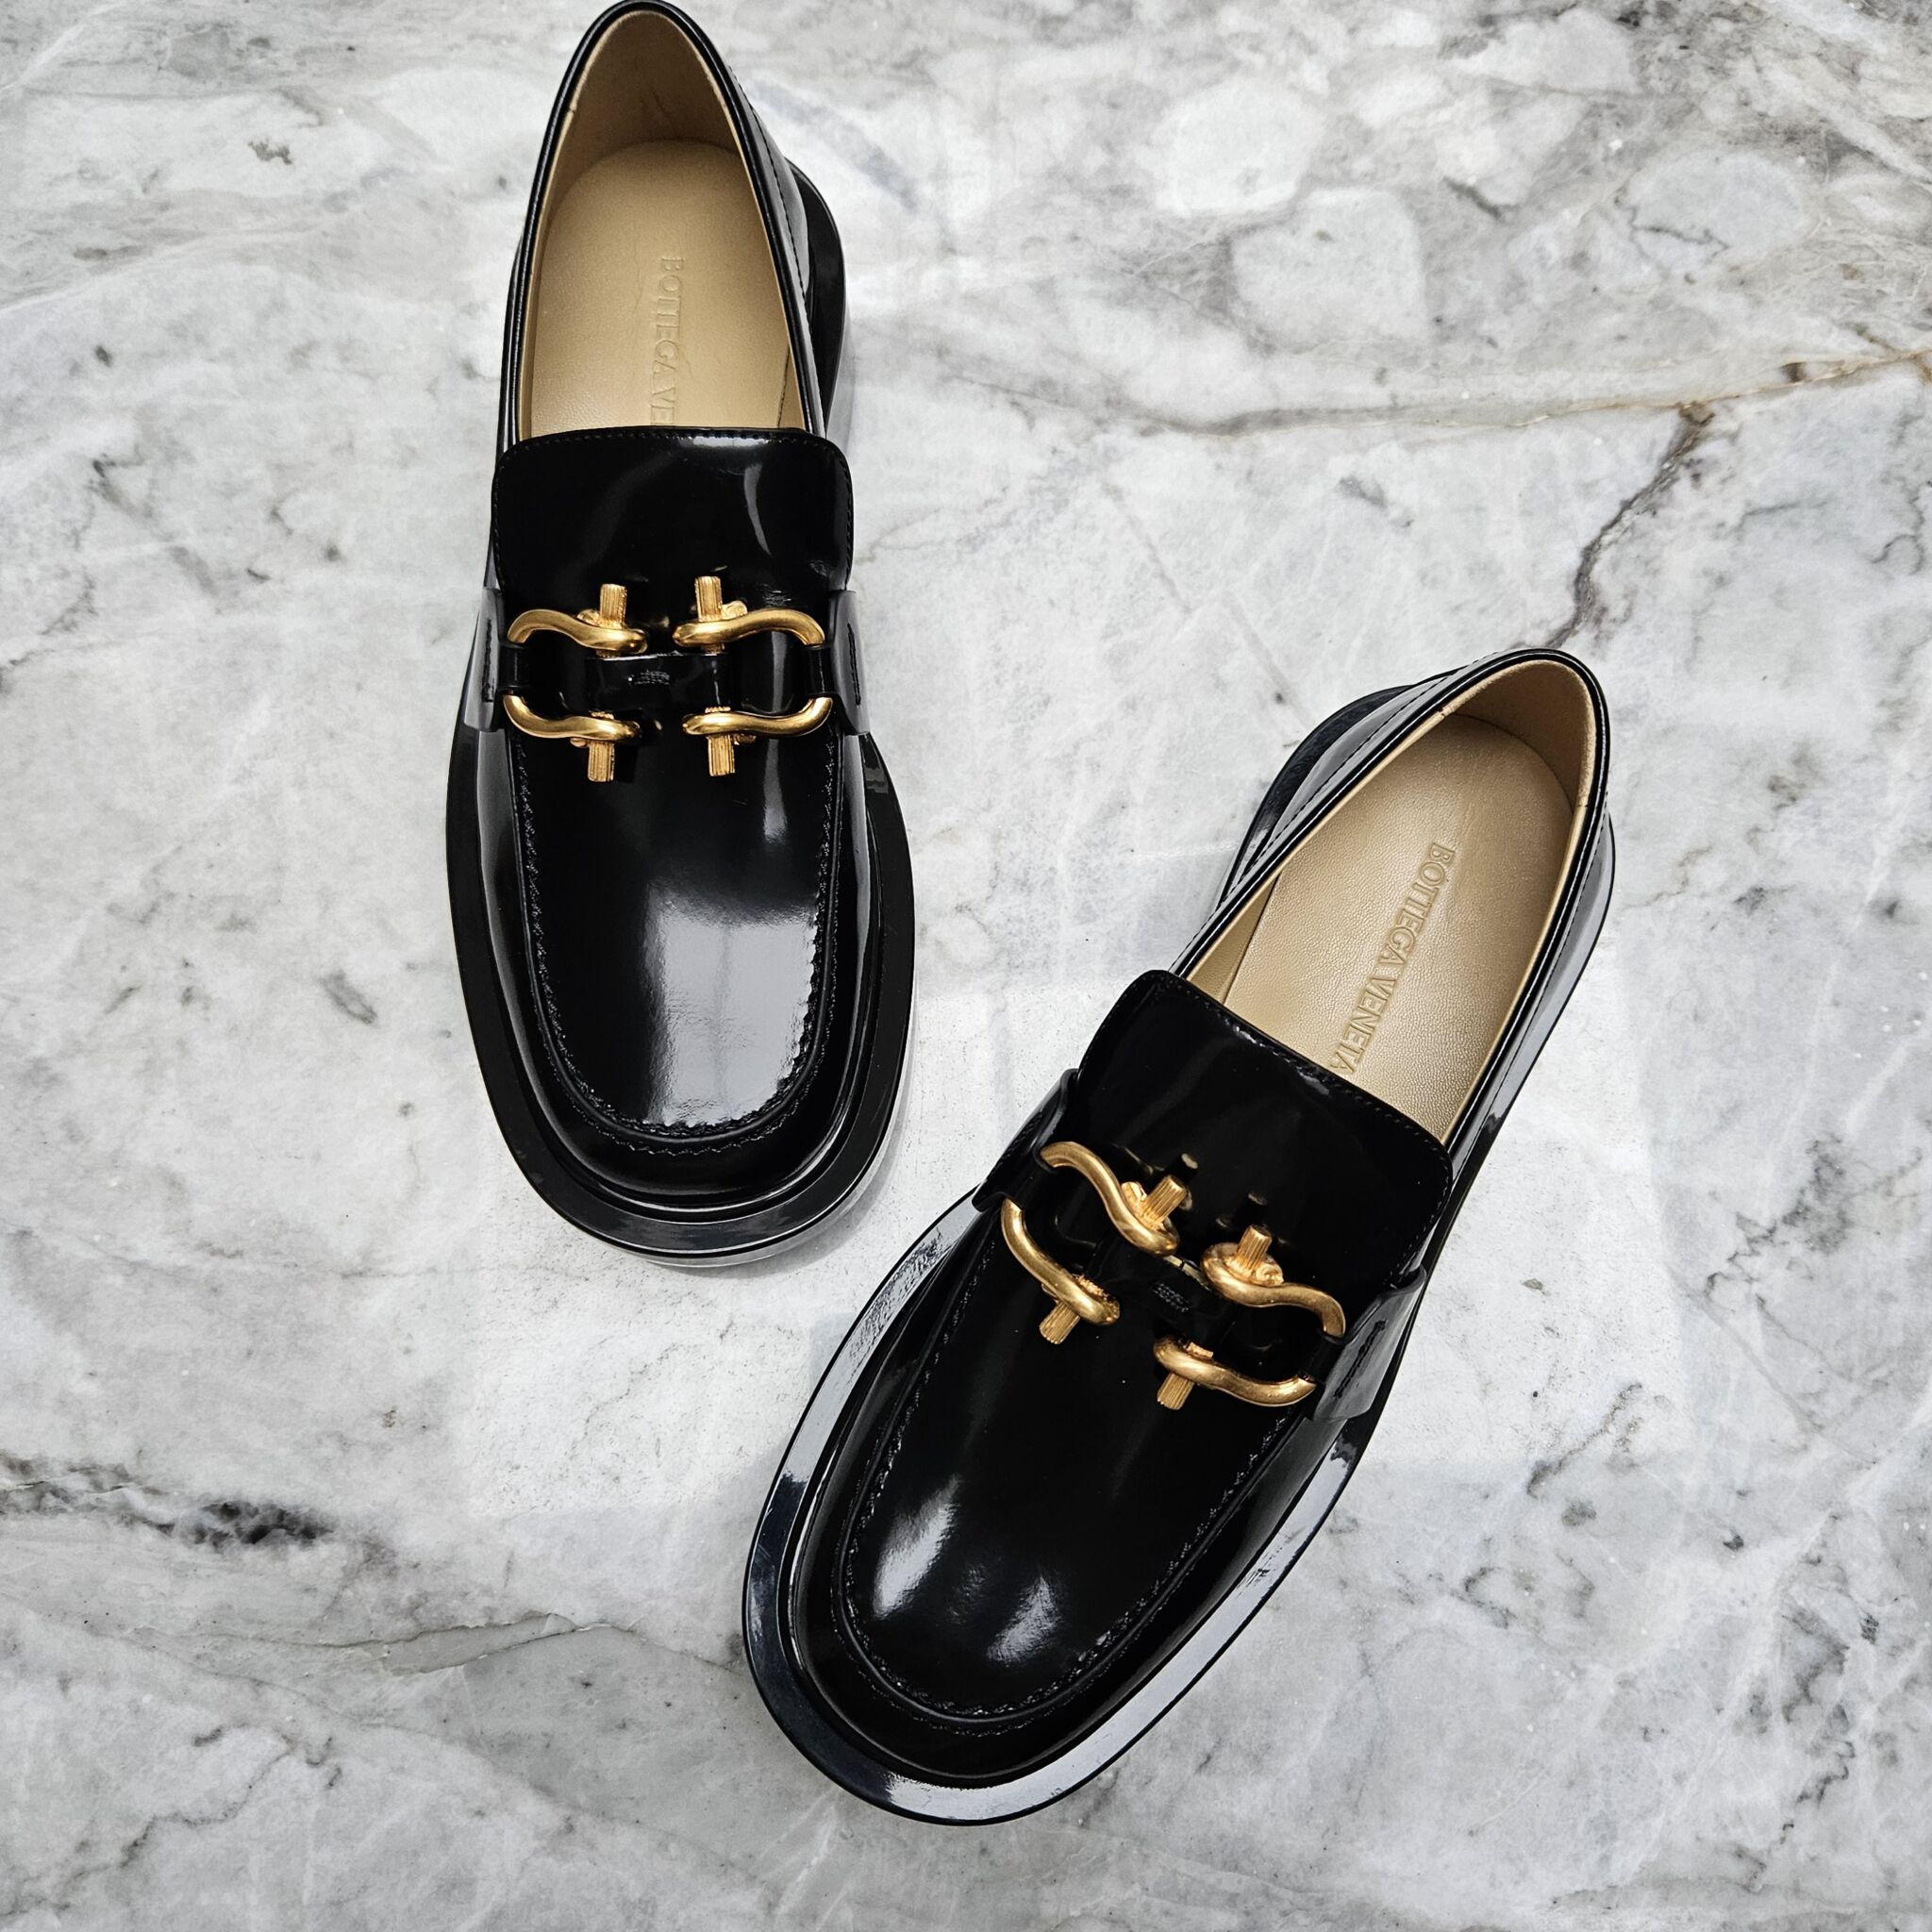 Louis Vuitton Frontrow Sneakers, Mono, 39.5 - Laulay Luxury